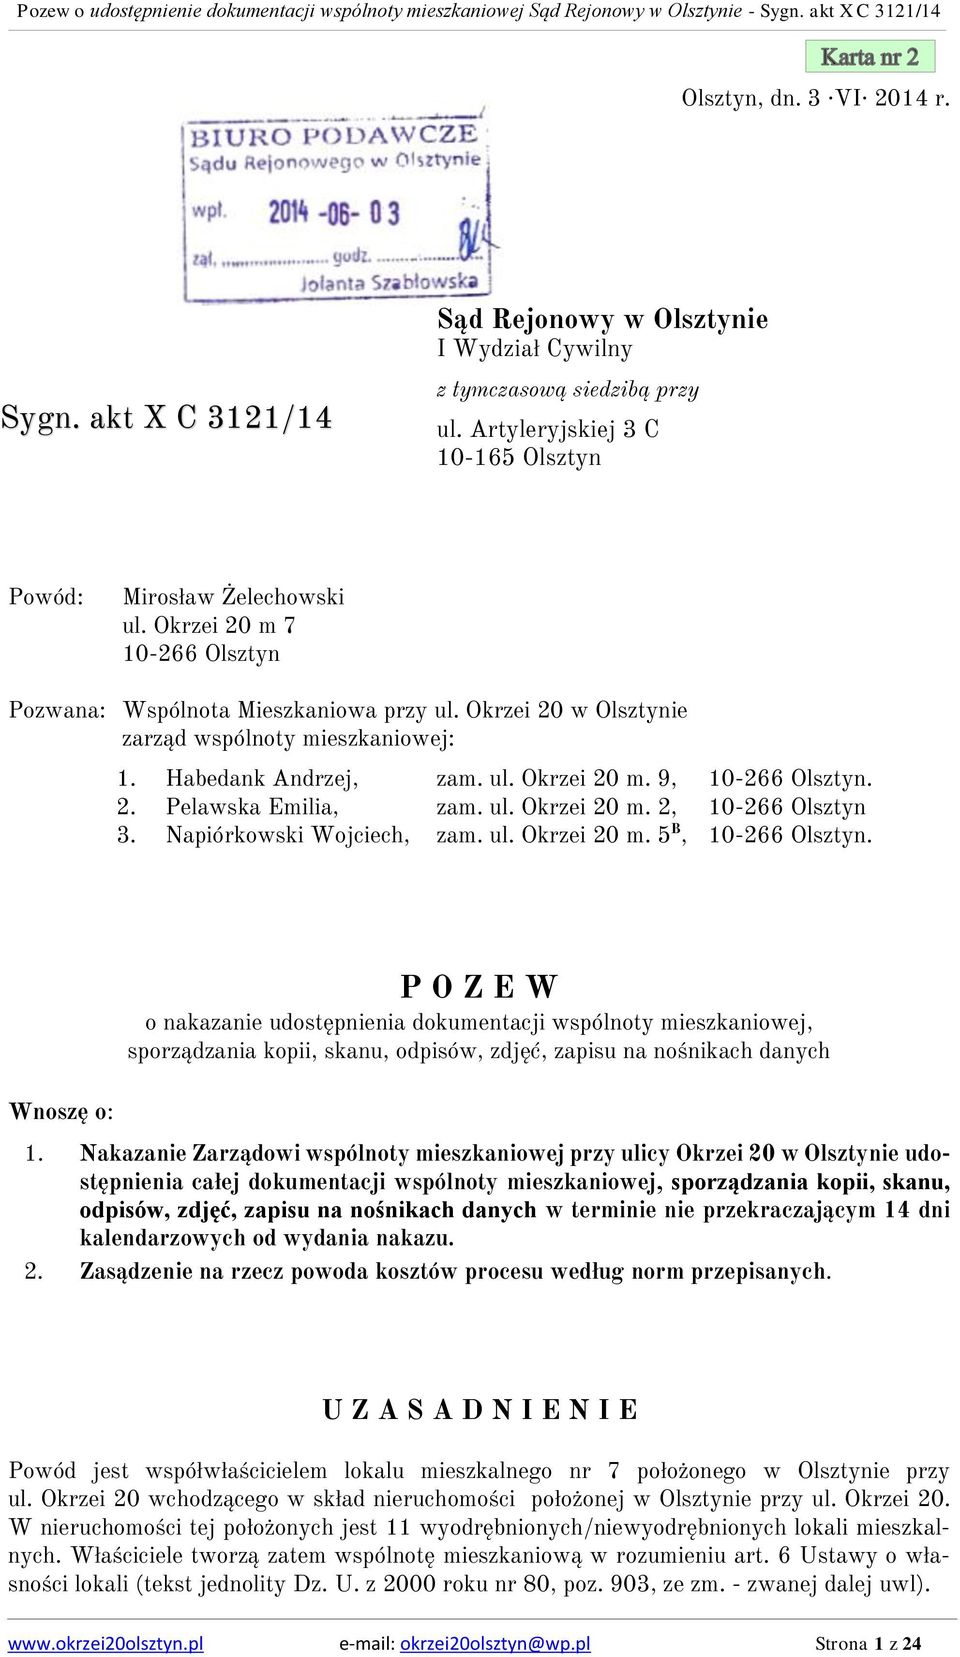 ul. Okrzei 20 m. 2, 10-266 Olsztyn 3. Napiórkowski Wojciech, zam. ul. Okrzei 20 m. 5 B, 10-266 Olsztyn.